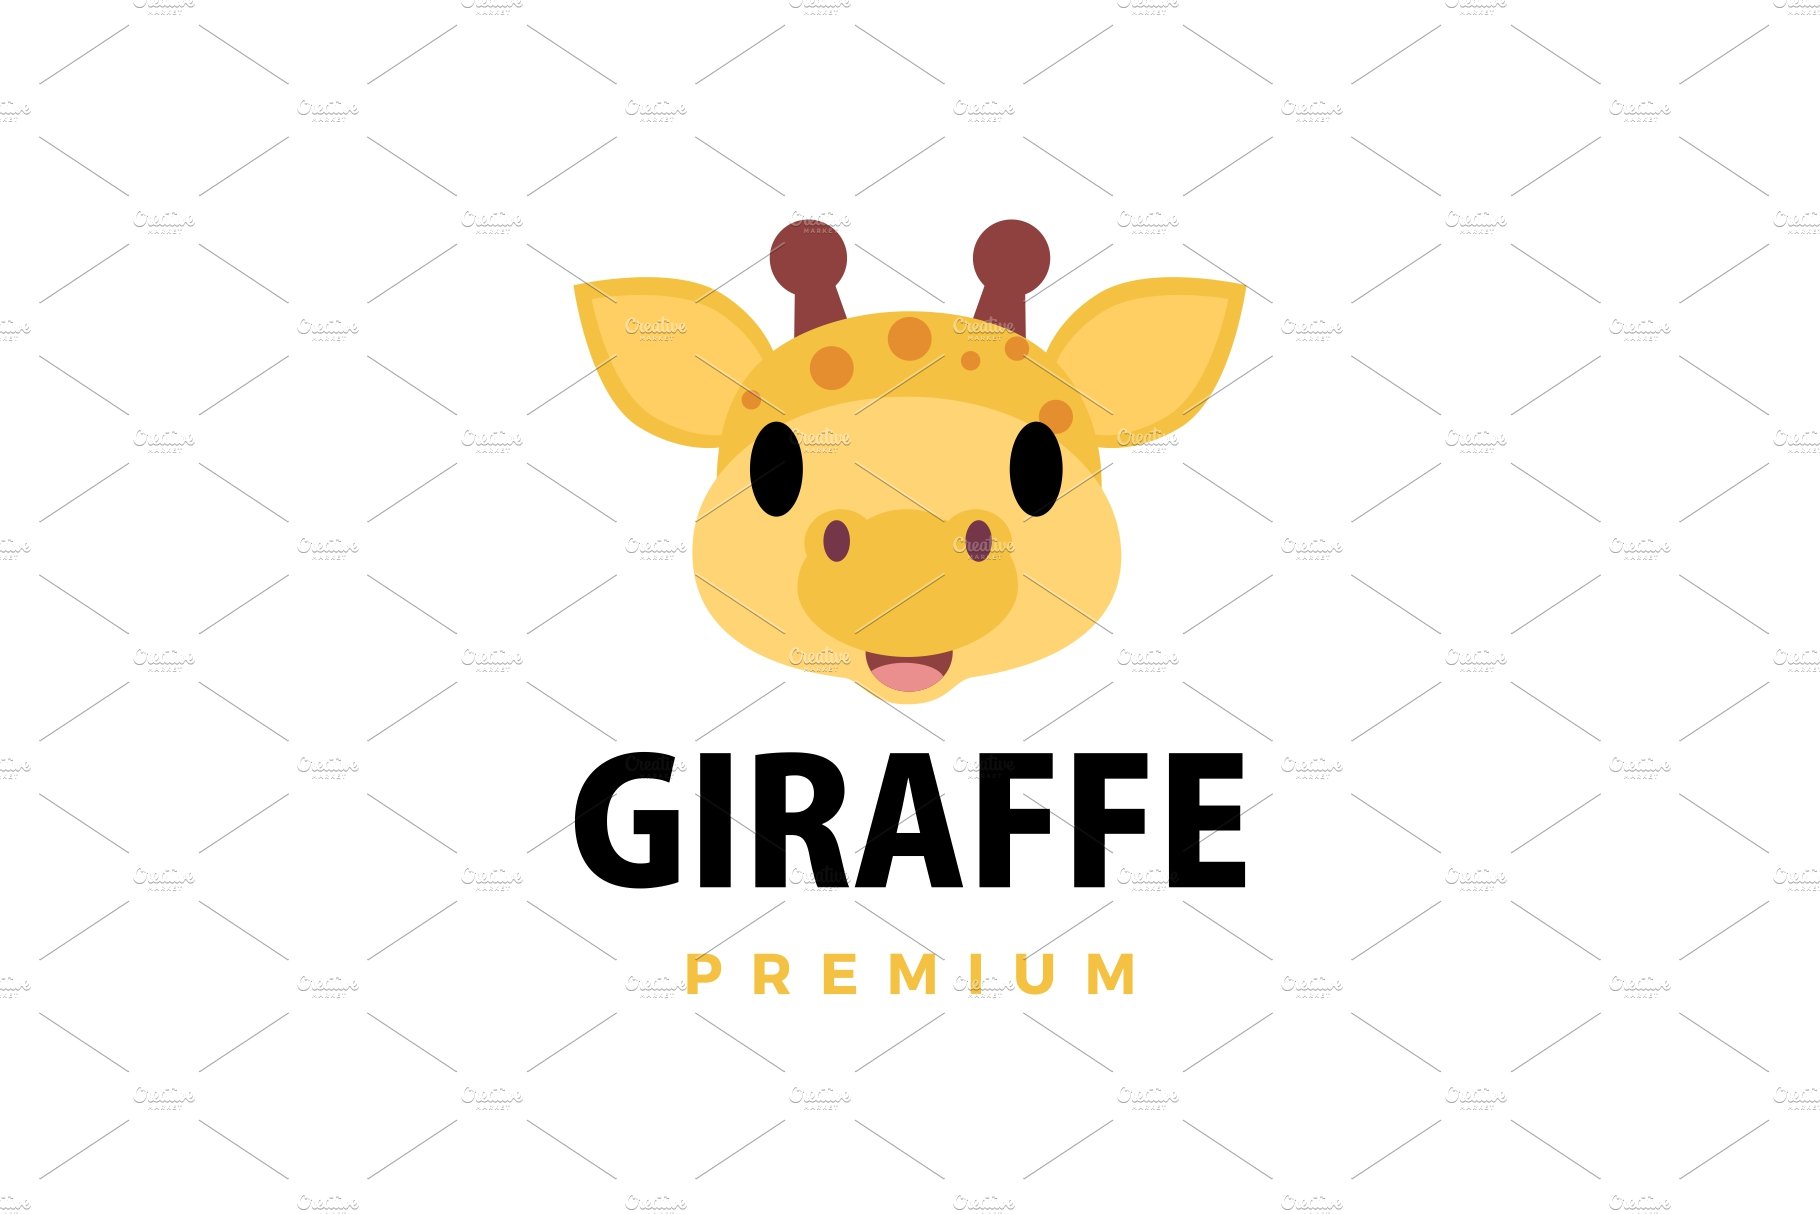 cute giraffe flat logo vector icon cover image.